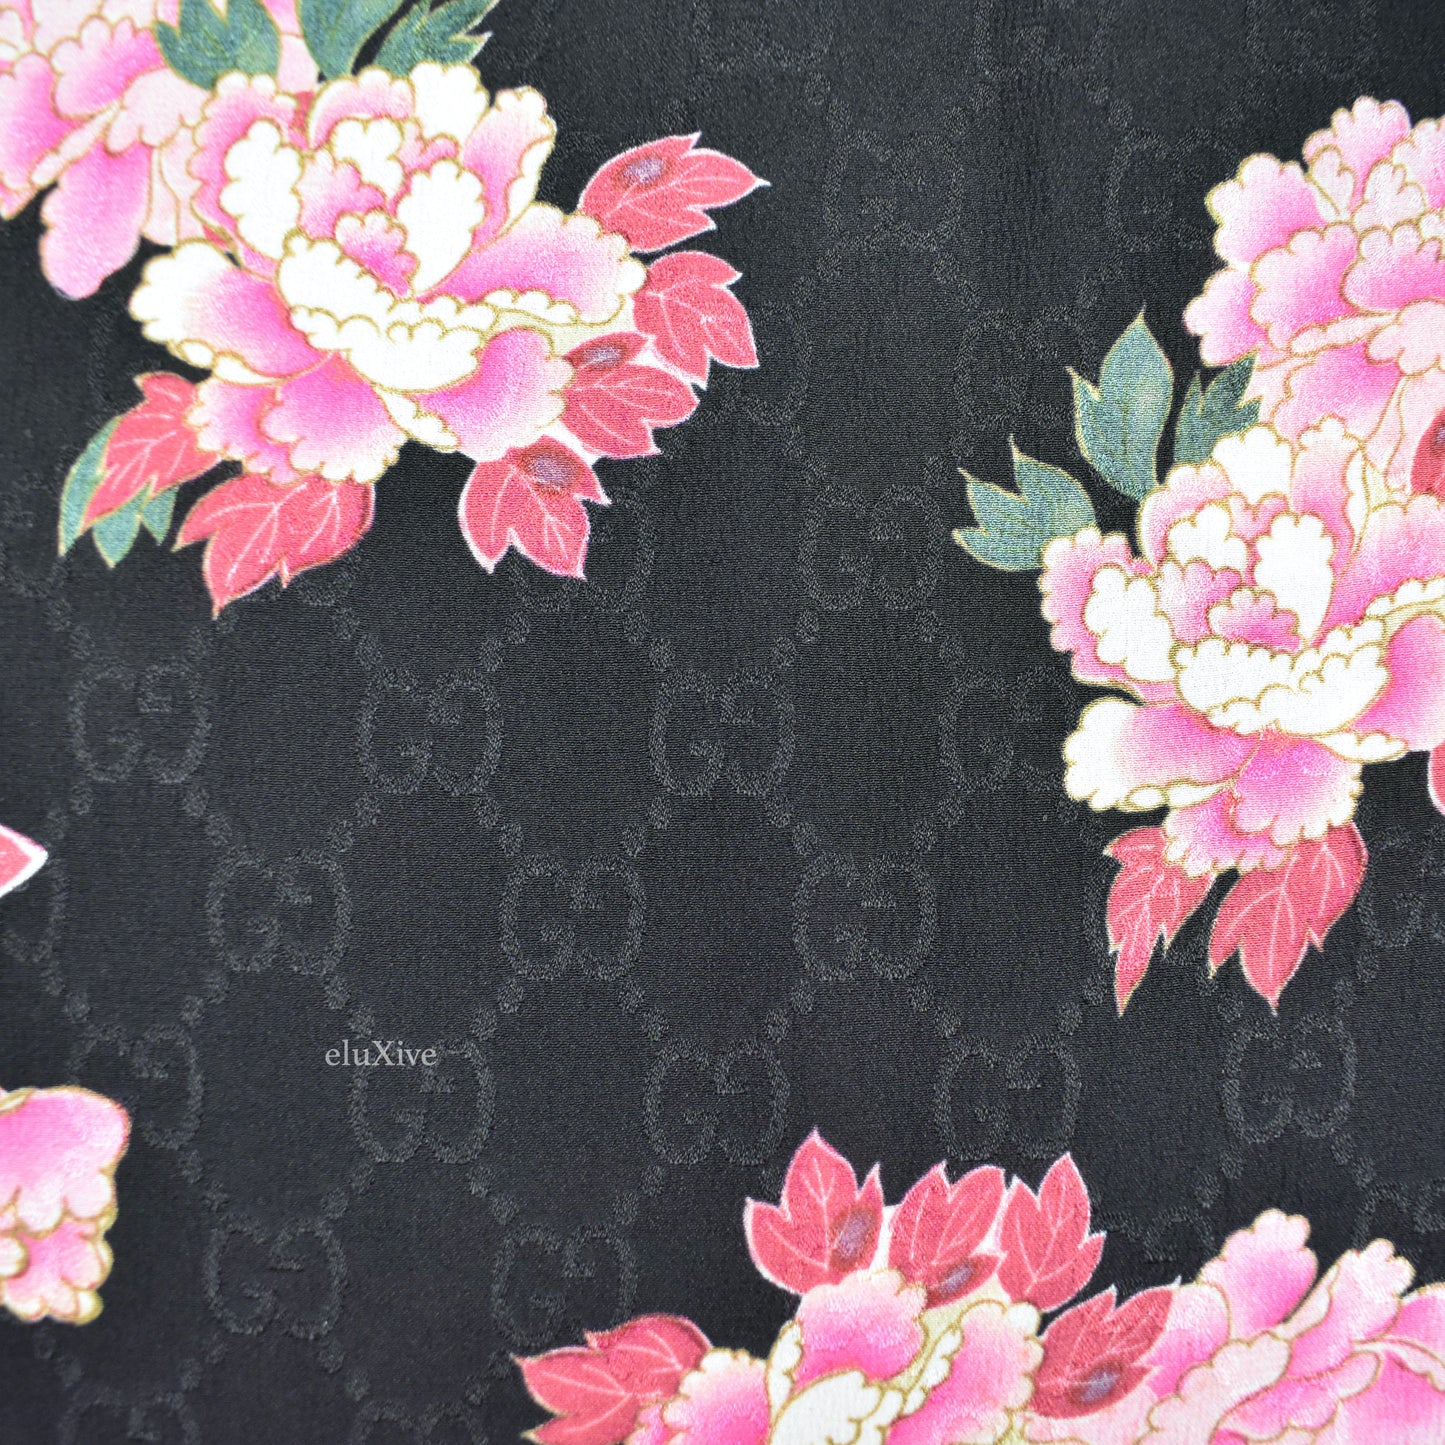 Gucci - Black Jacquard Monogram Woven Peony Blooms Slik Shorts